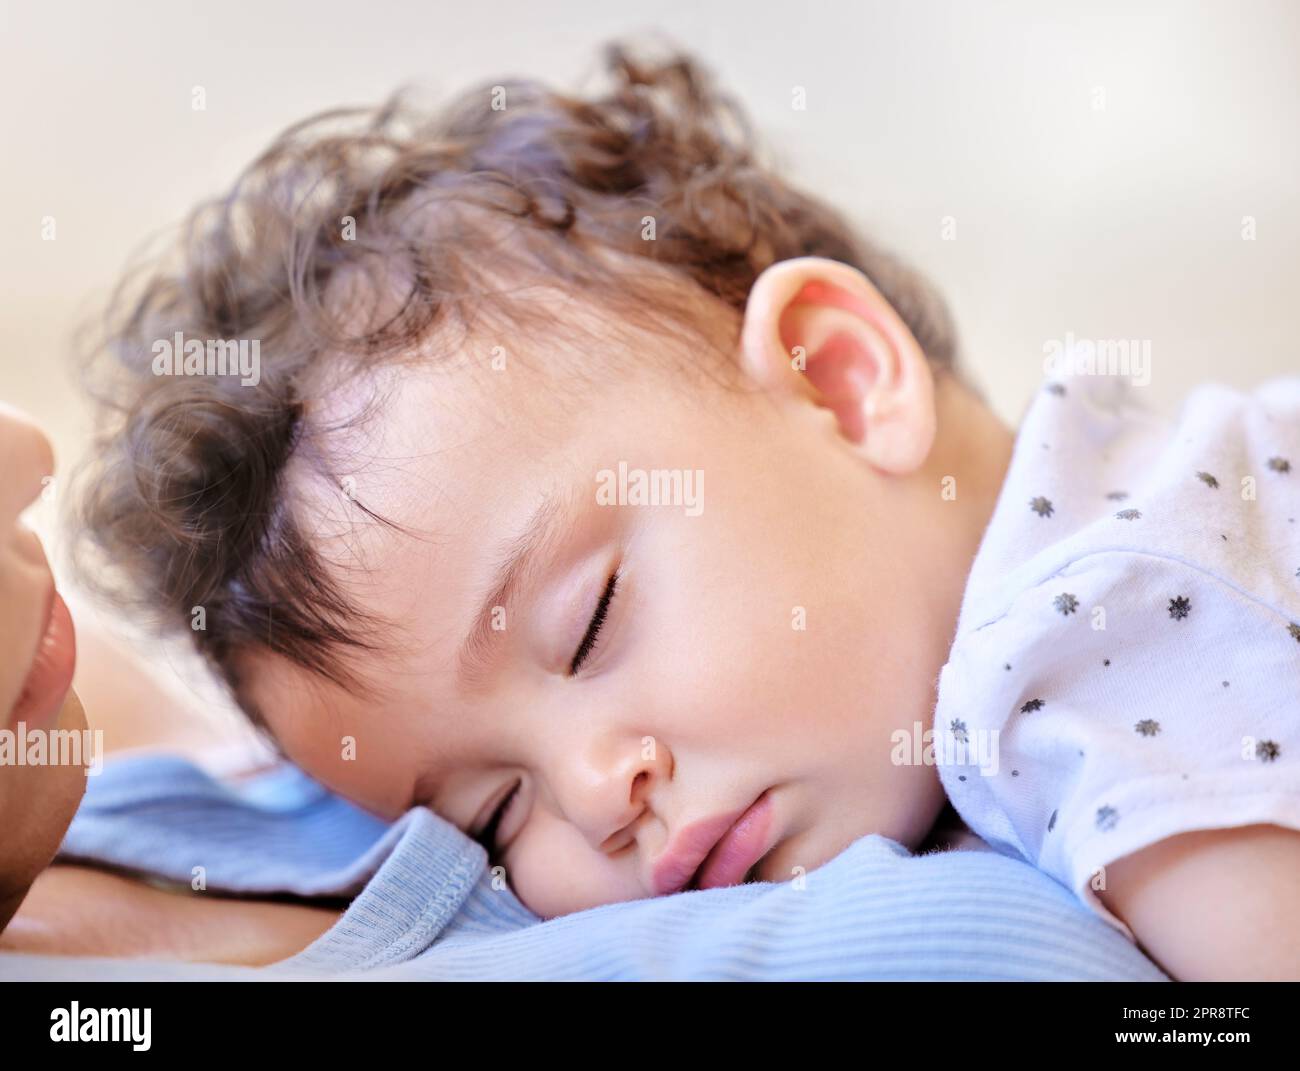 Das kleine Baby schläft auf der Brust der Mutter. Ein kleines Mädchen, das auf ihrer mutter schläft. Gesicht des ruhenden Babys. Mutter hält ihr schlafendes Kind. Liebevolle Mutter, die sich mit einem schlafenden Kind verbindet. Süßes Baby-Nickerchen Stockfoto